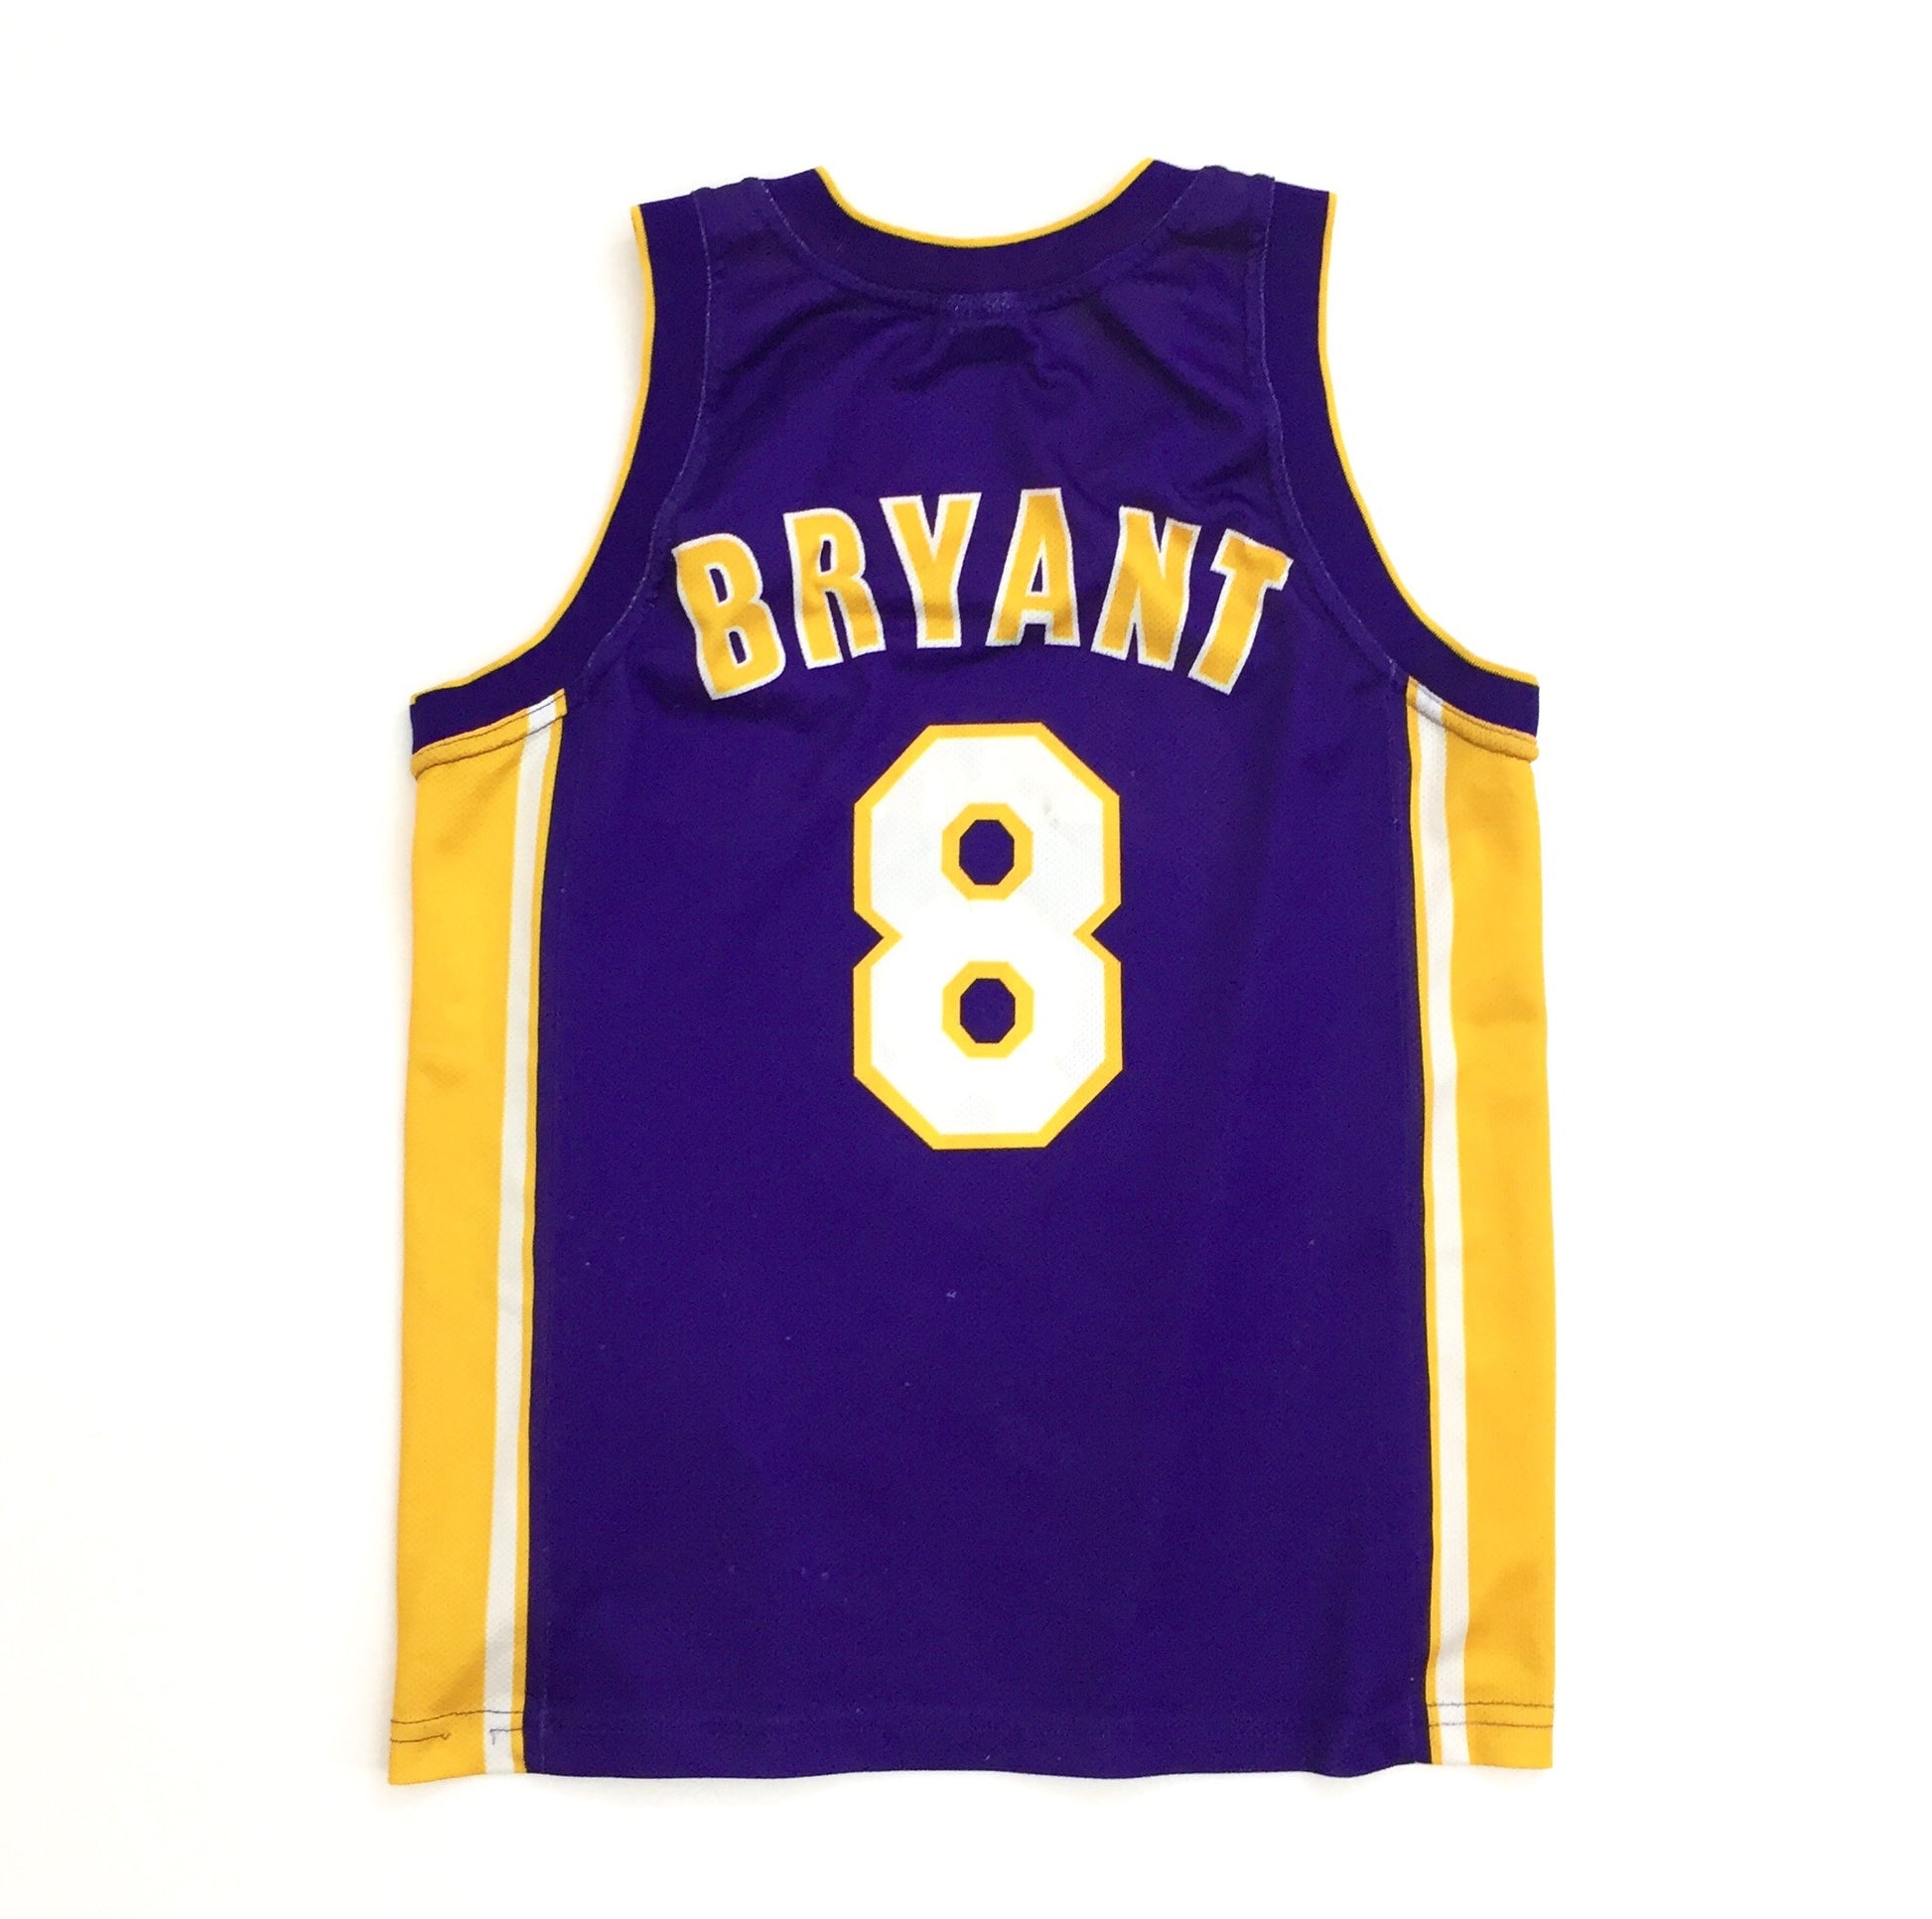 Champion, Shirts, Kobe Bryant 8 Champion Jersey Size 4